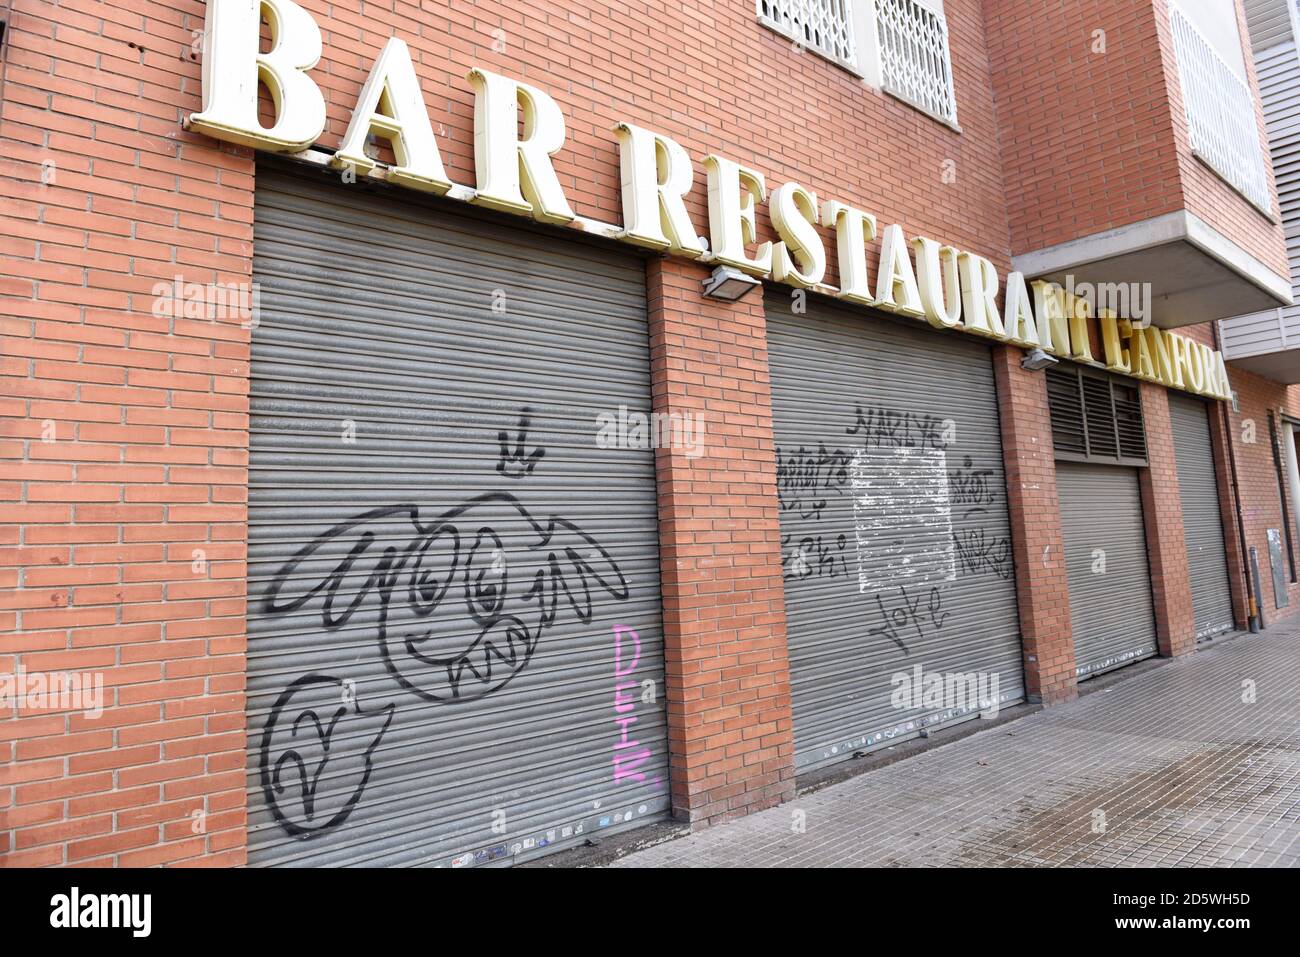 Bar Restaurant mit geschlossenen Türen in Barcelona gesehen.Katalonien Regierung schließt Restaurants und Bars für zwei Wochen, um Mobilität und soziale Interaktion in der nordöstlichen spanischen Region zu reduzieren, um die Eskalation der COVID-19 Fälle anzugehen. Stockfoto